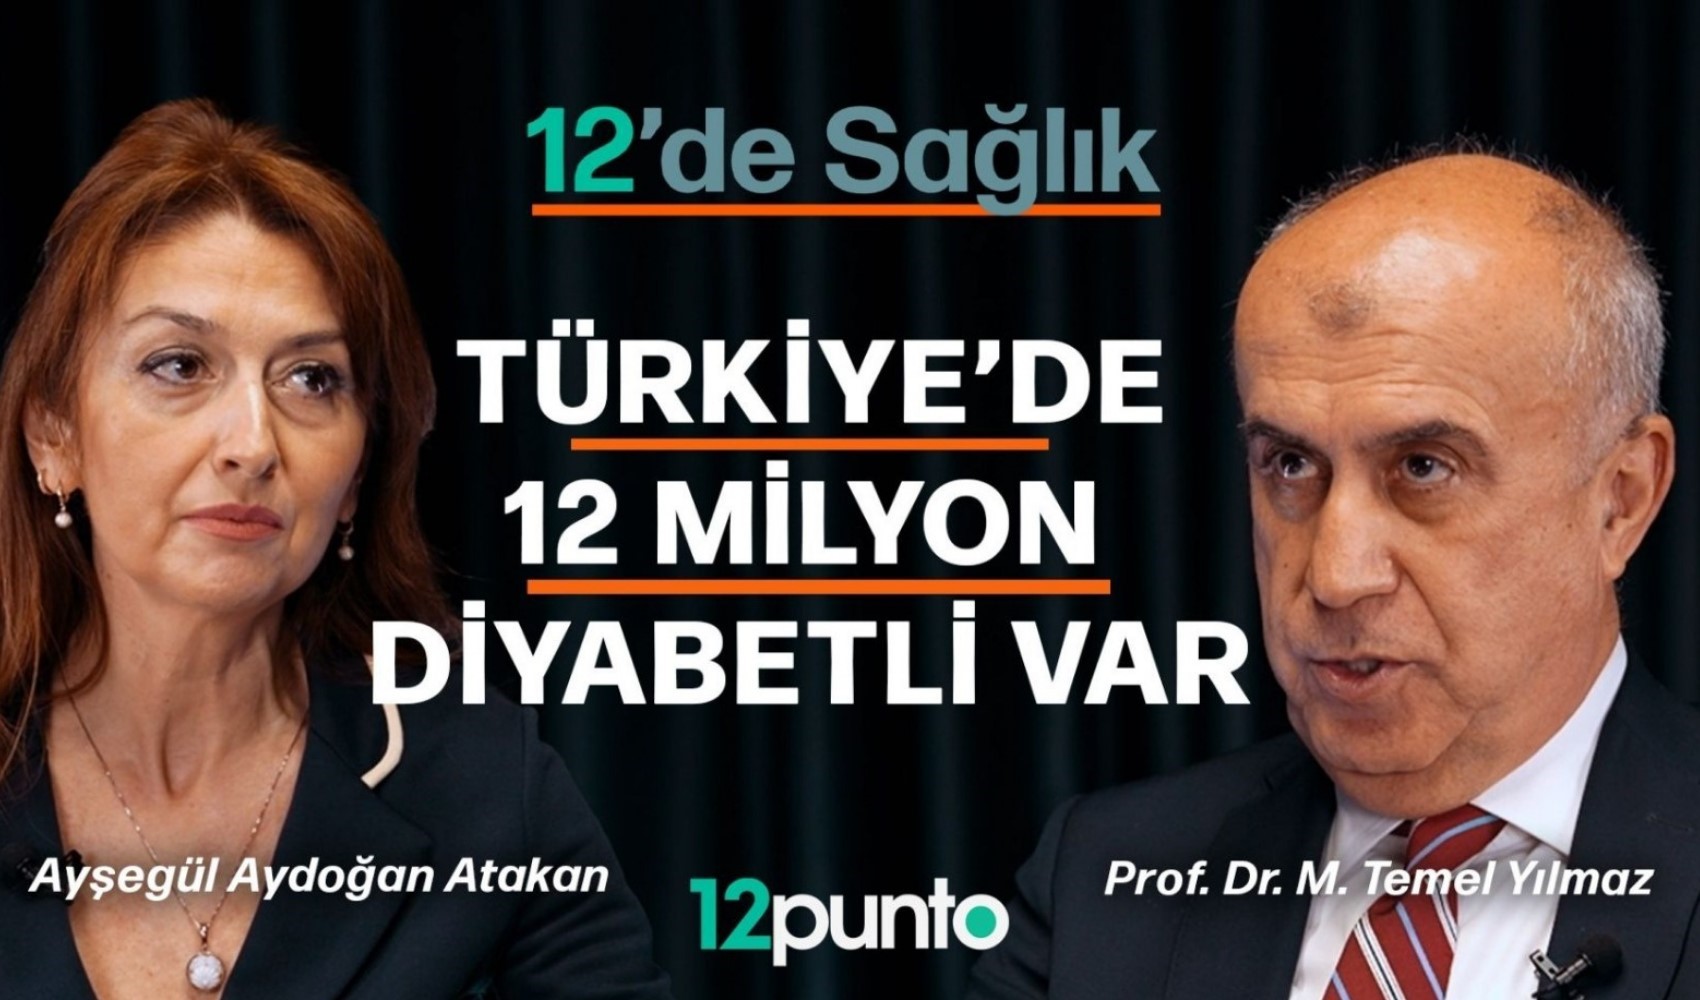 Ayşegül Aydoğan Atakan'ın hazırlayıp sunduğu 12'de Sağlık yayında: İlk konuk Prof. Dr. M. Temel Yılmaz